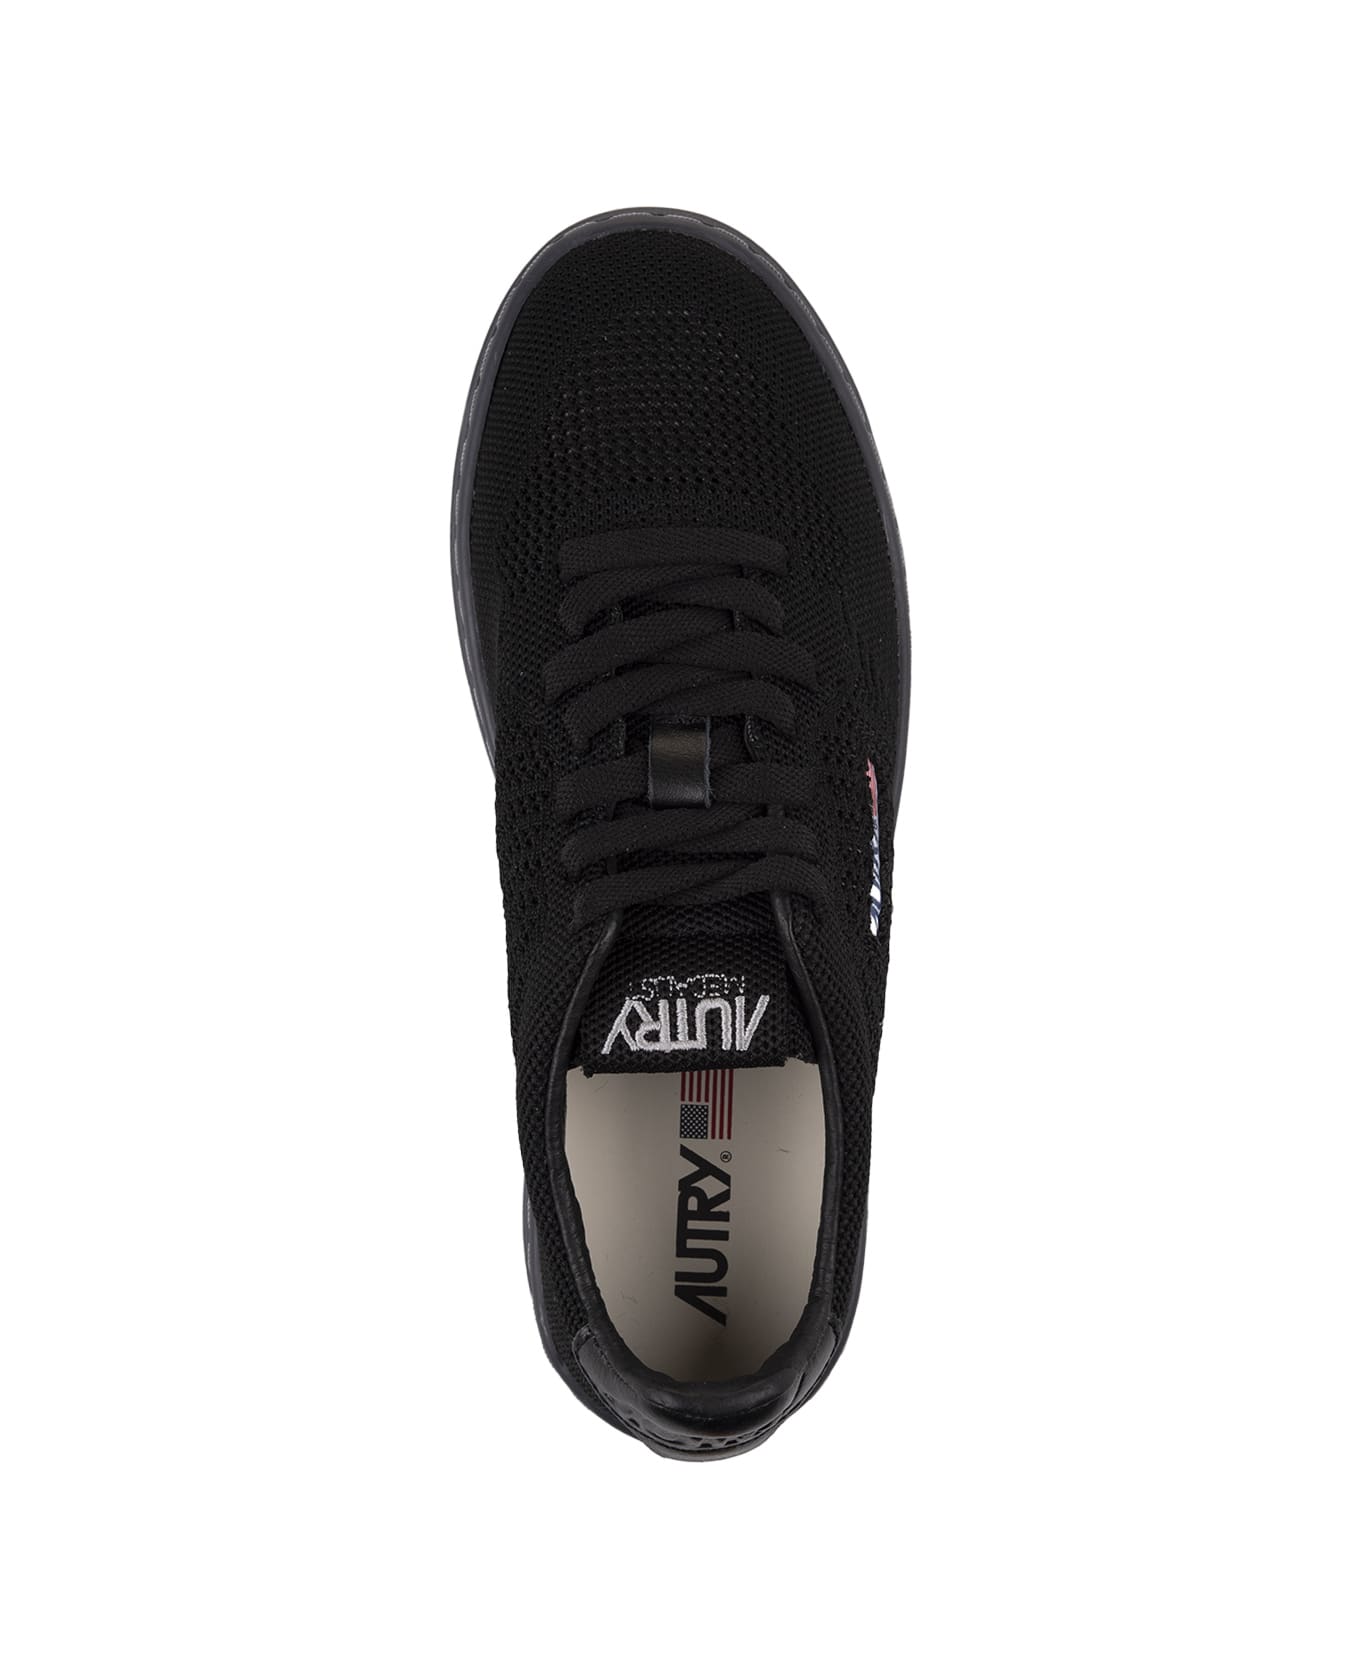 Autry Black Easeknit Low Sneakers - Black スニーカー